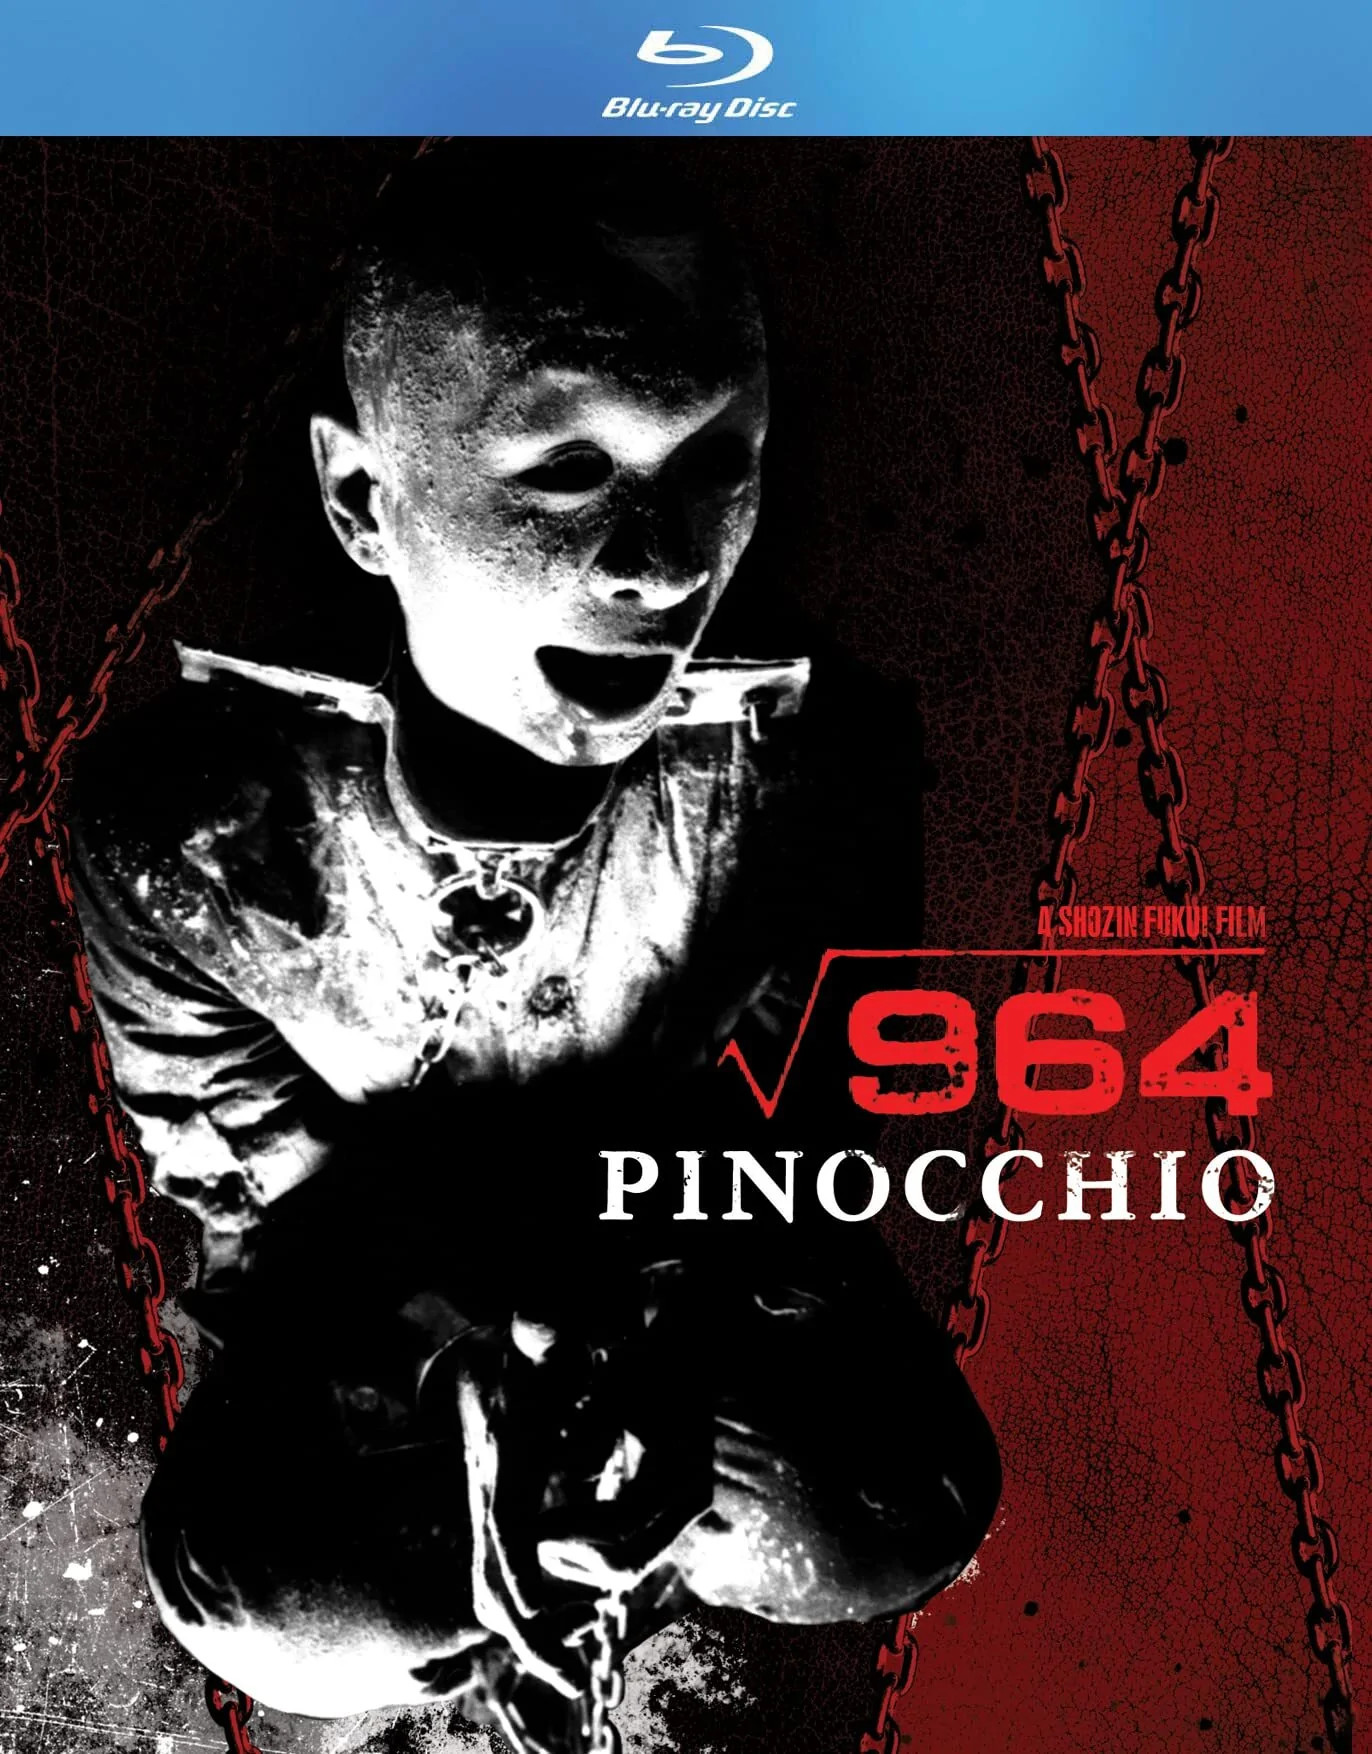 Pinocchio 964